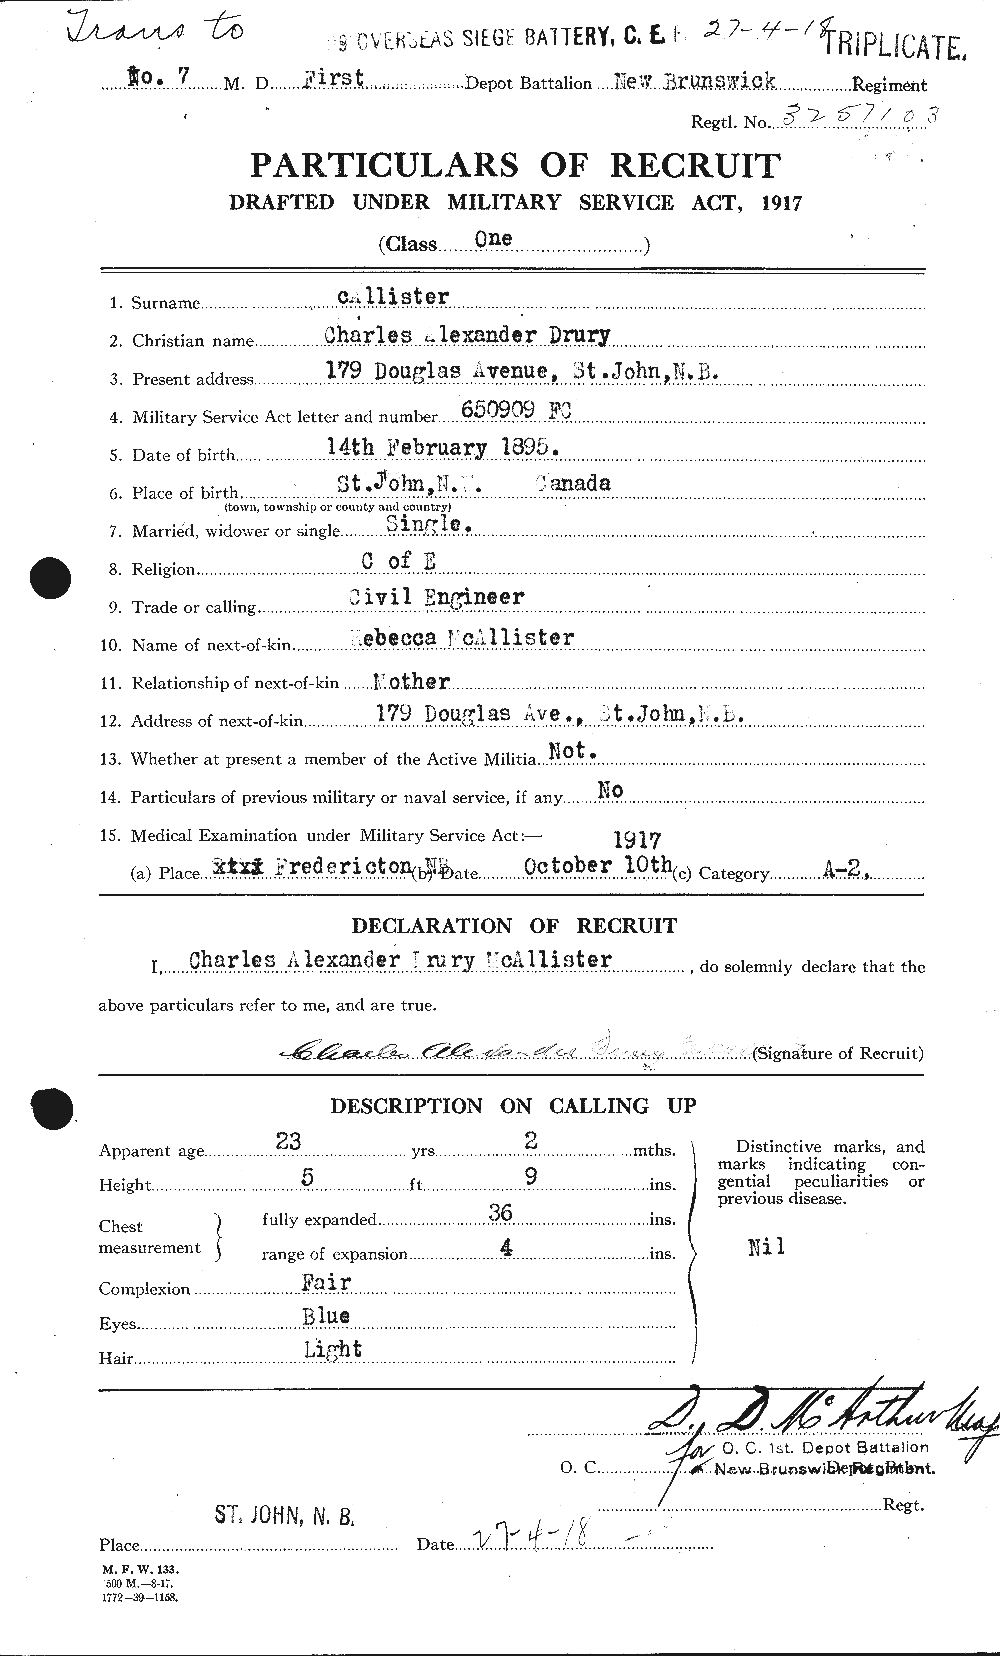 Dossiers du Personnel de la Première Guerre mondiale - CEC 513160a